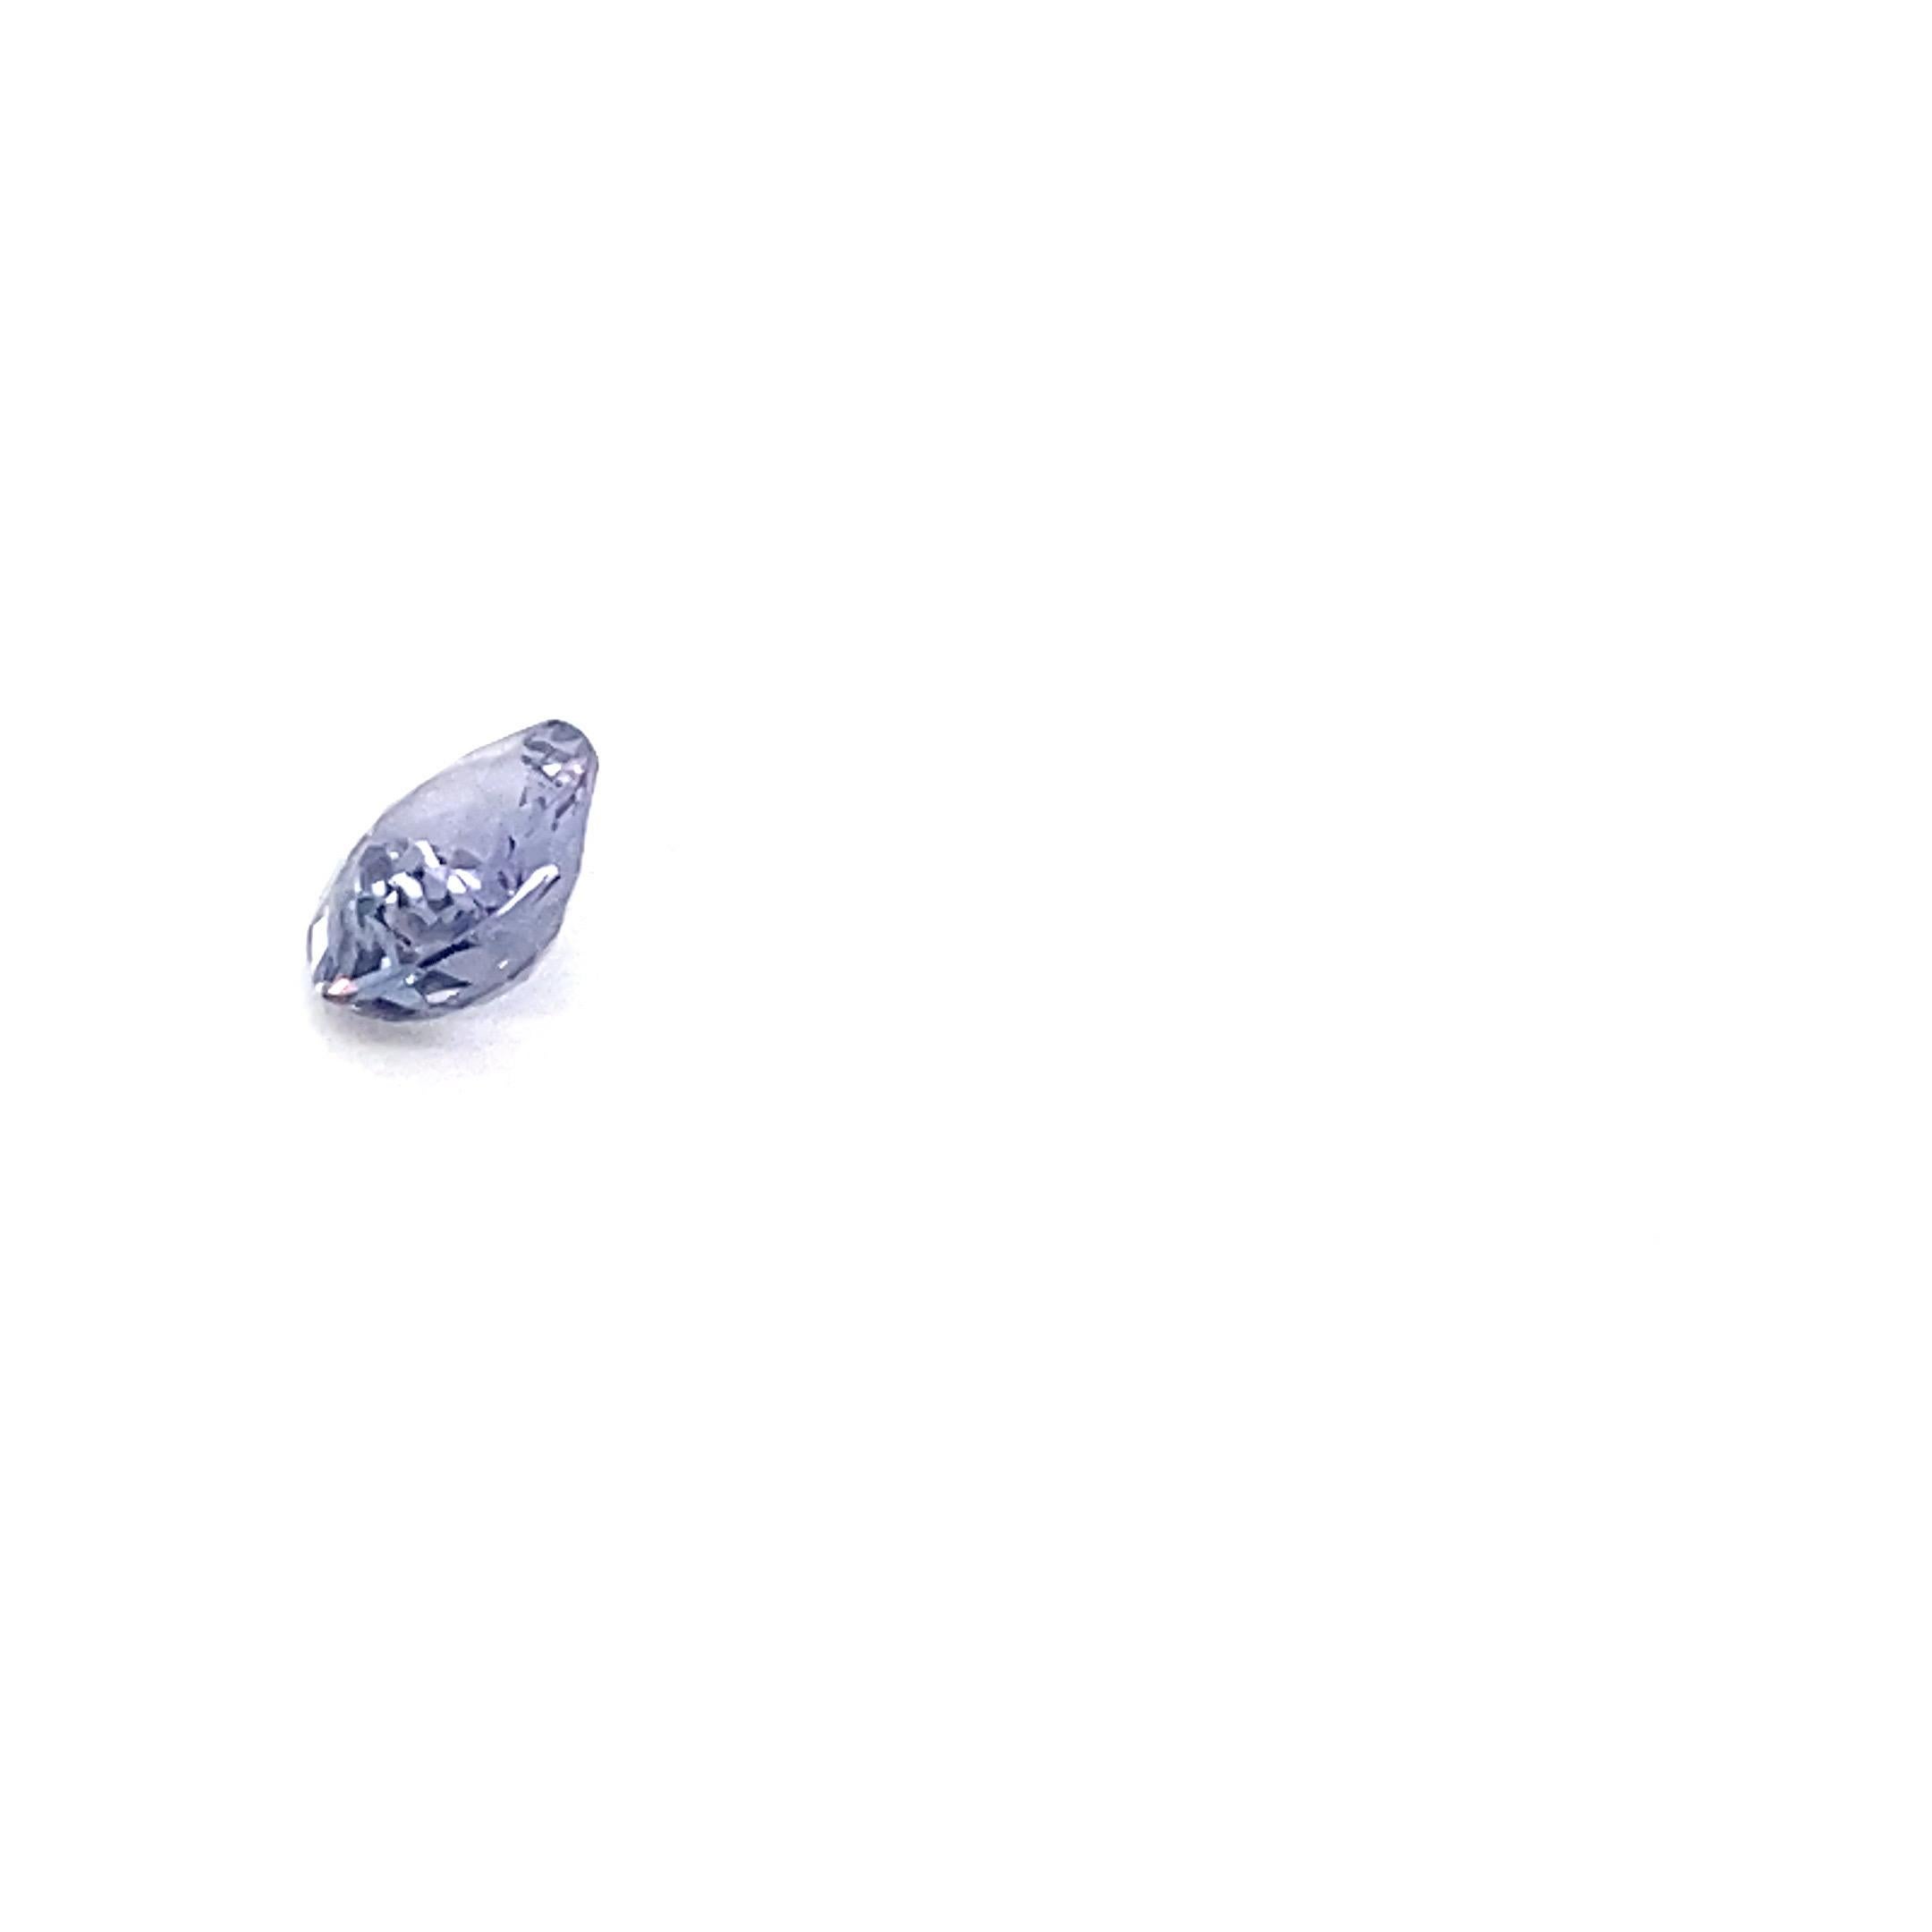 1.6 Carat Oval Shape Natural Violet Spinel Loose Gemstone For Sale 2